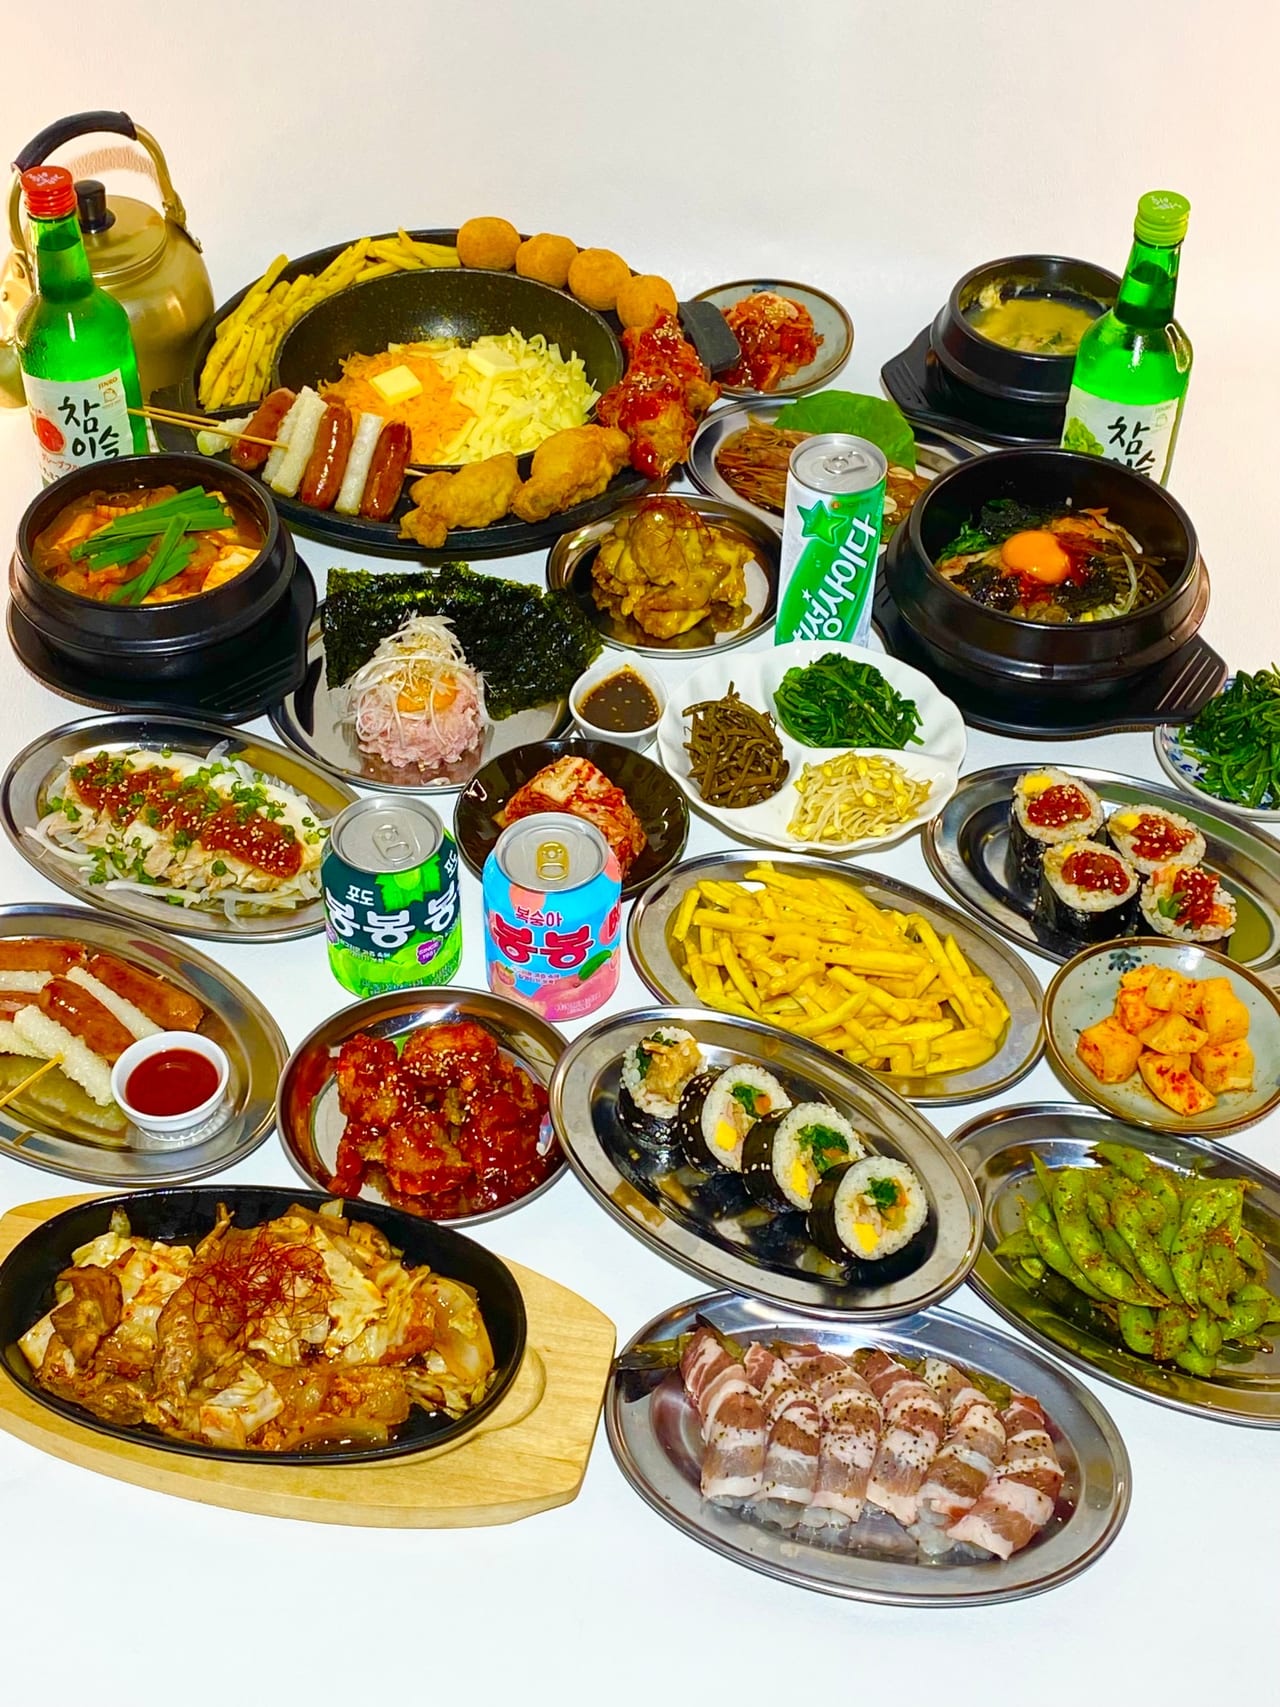 韓国料理ソジョウォンの料理集合写真。提供写真